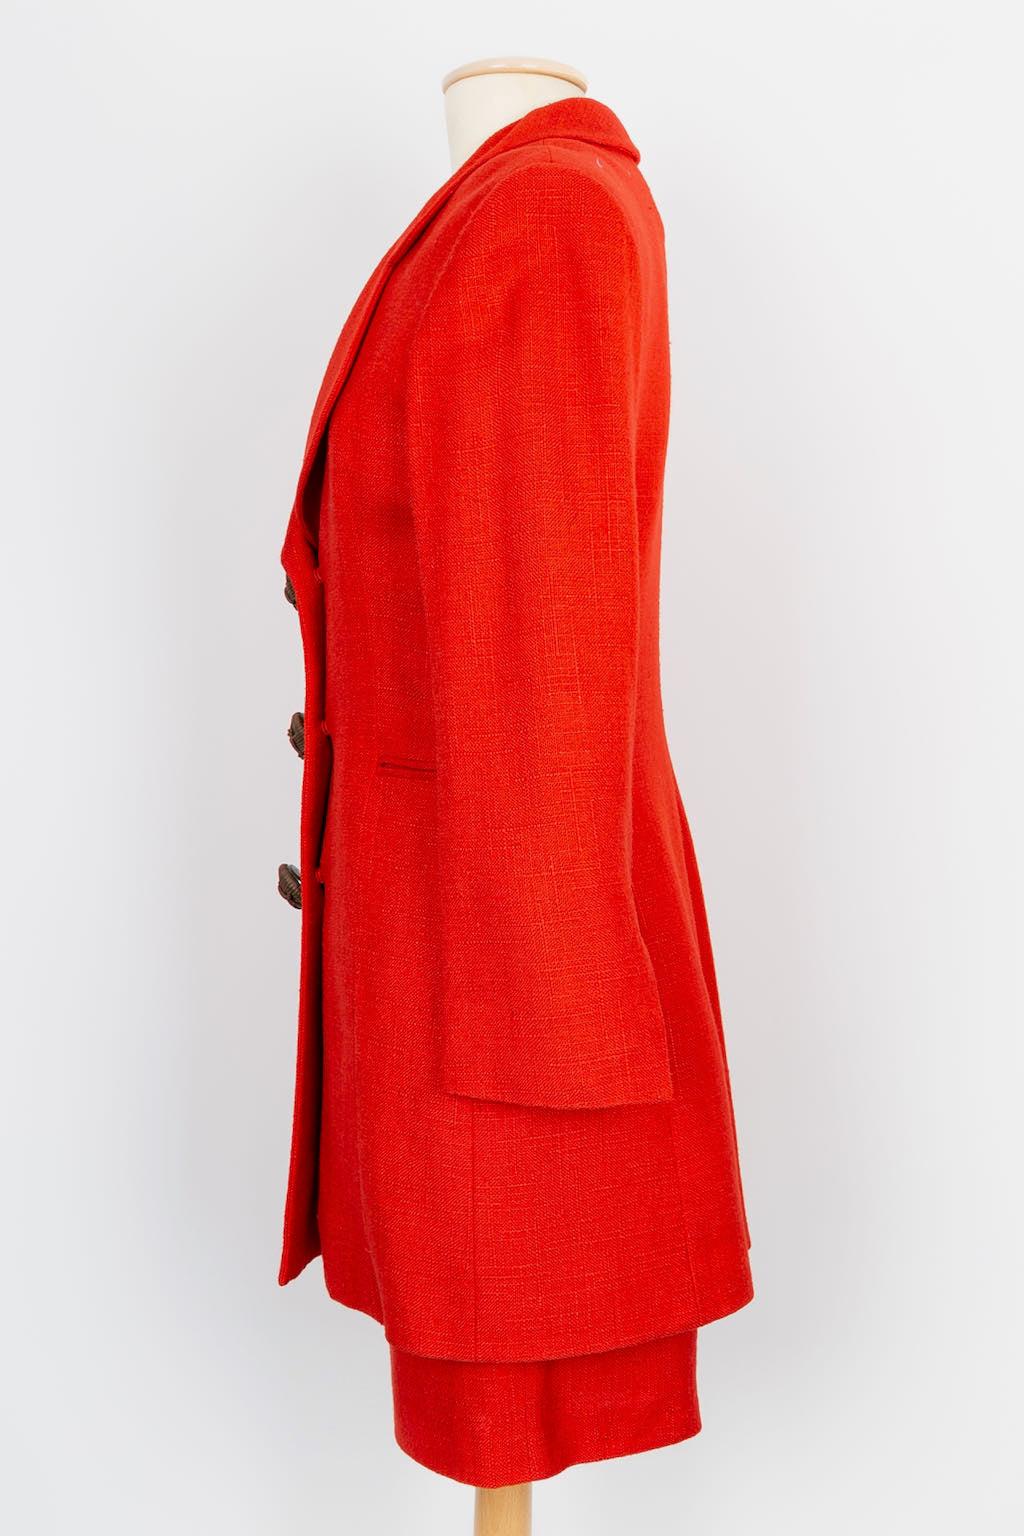 Dior - Ensemble trois pièces en lin et coton rouge avec boutons en cuir. Pas de Label de composition ni de taille indiquée, il convient au 36FR.

Informations complémentaires : 
Dimensions : Veste : Largeur des épaules : 44 cm, Poitrine : 45 cm,